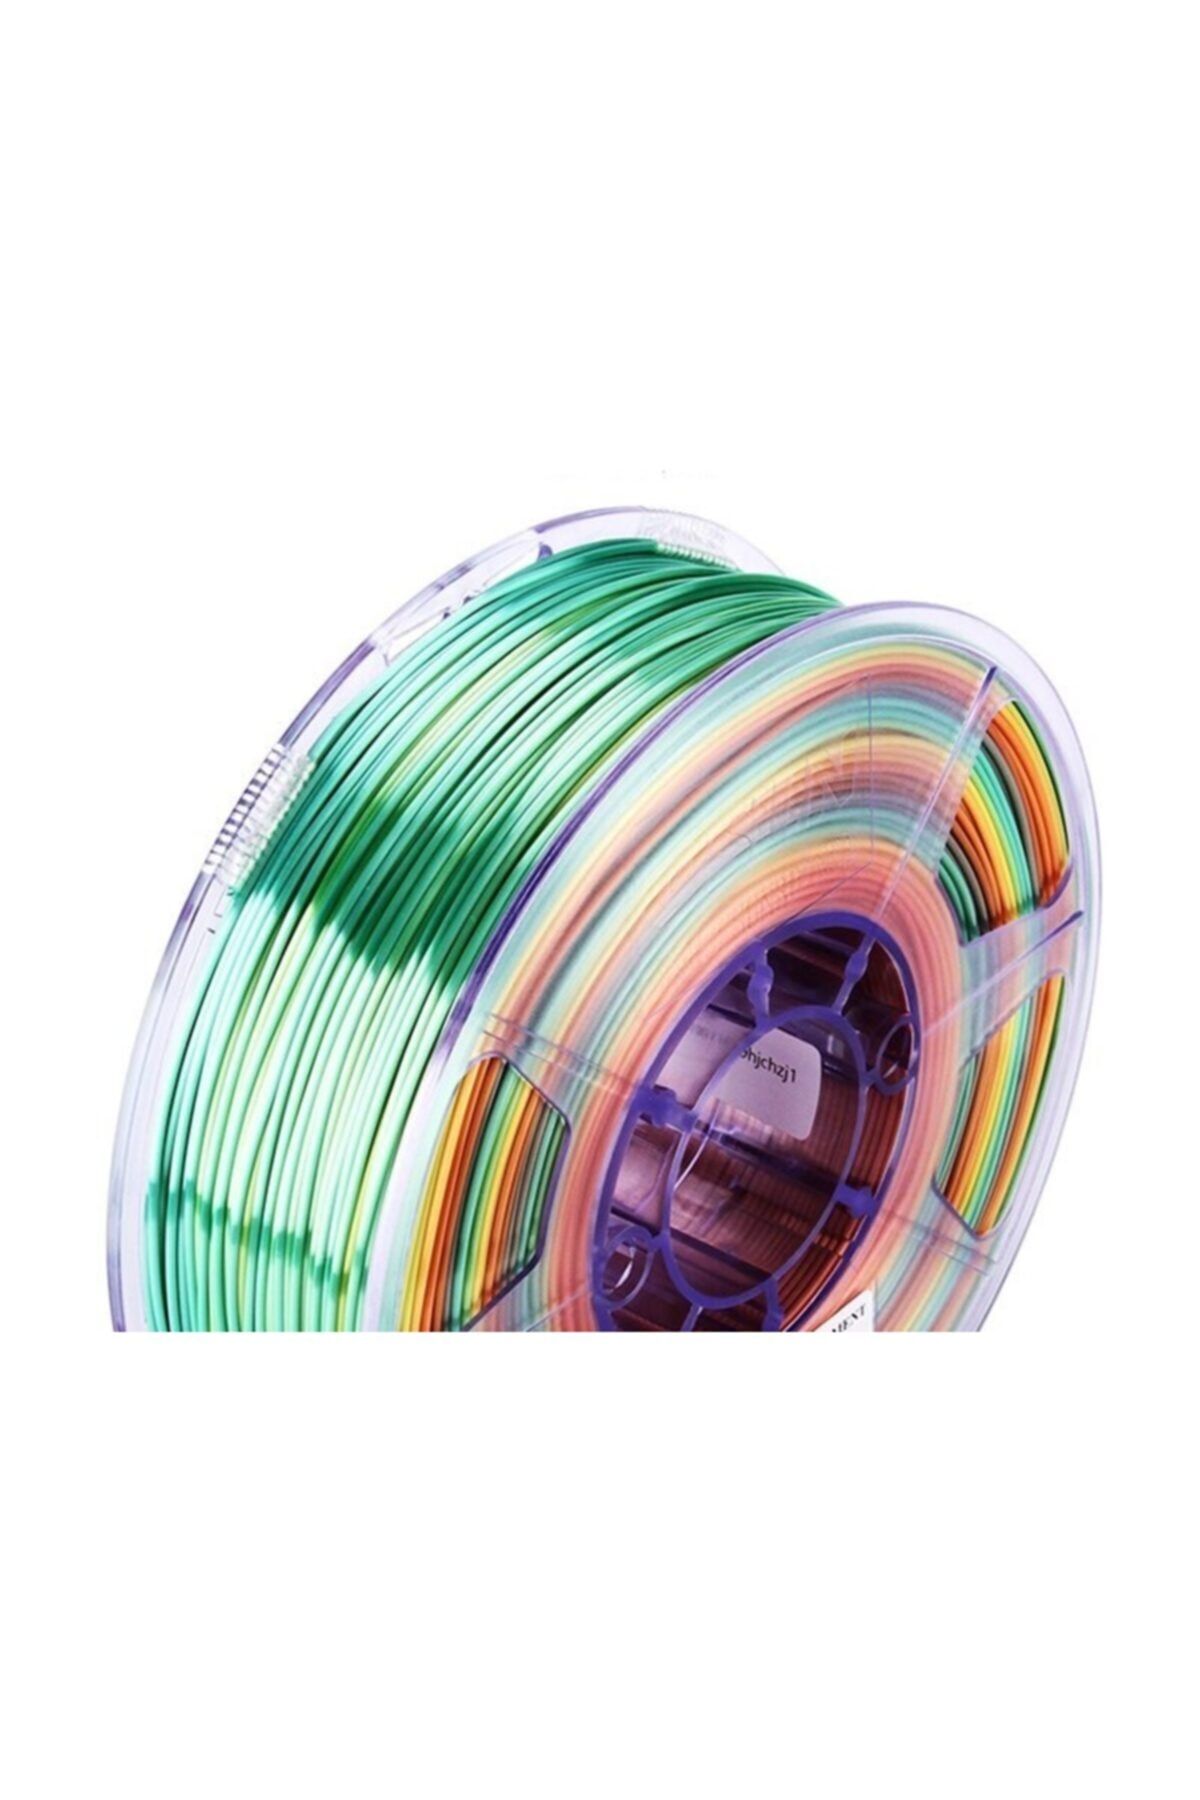 eSun Esilk Pla Rainbow Multi Renk Parlak Yüzey Silk Filament 1.75mm 1kg  Fiyatı, Yorumları - Trendyol